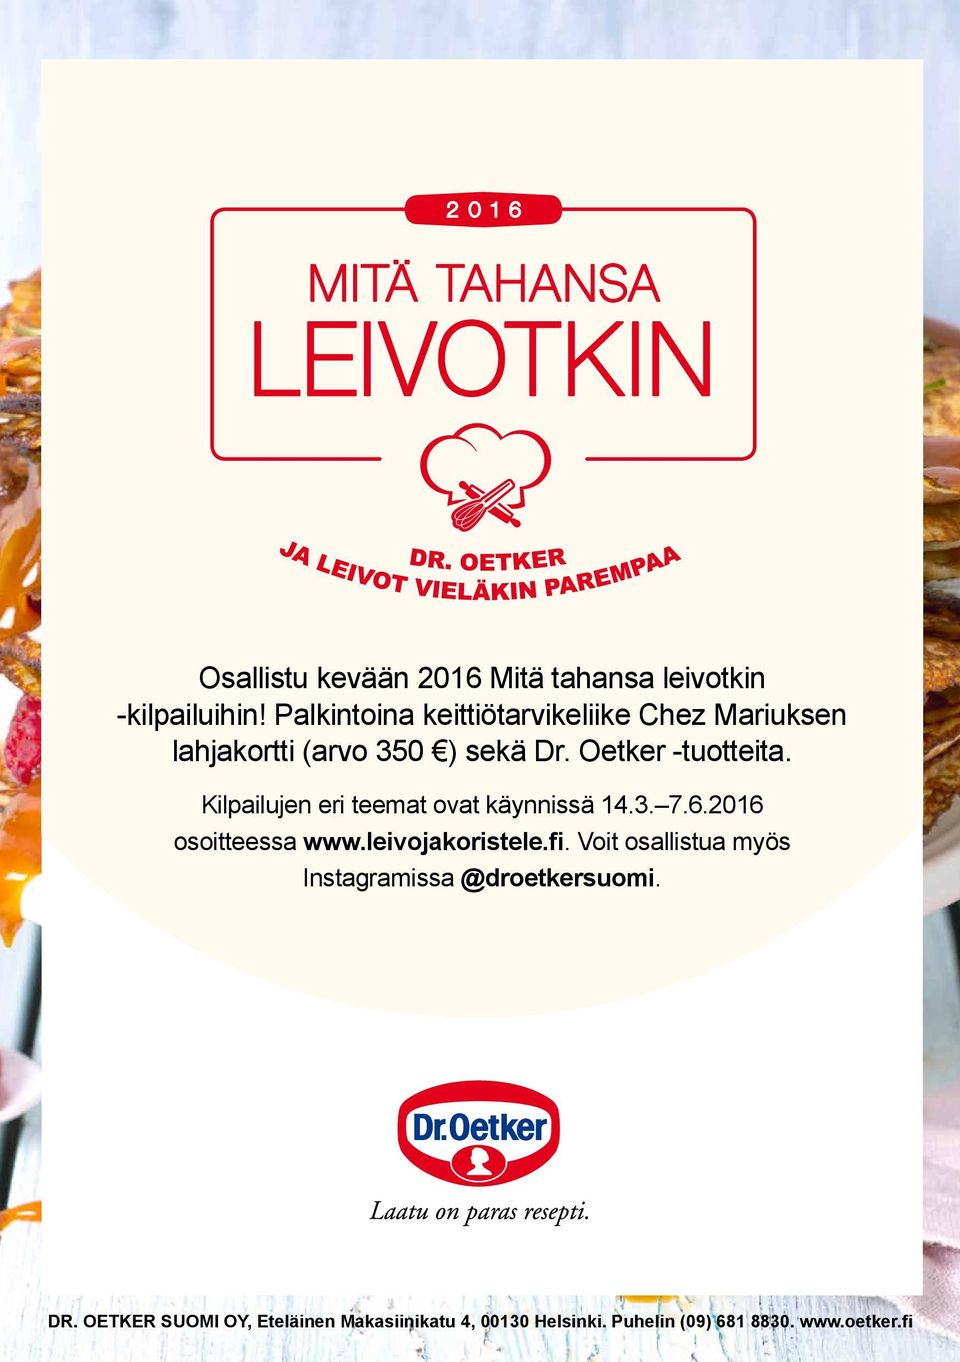 Kilpailujen eri teemat ovat käynnissä 14.3. 7.6.2016 osoitteessa www.leivojakoristele.fi.